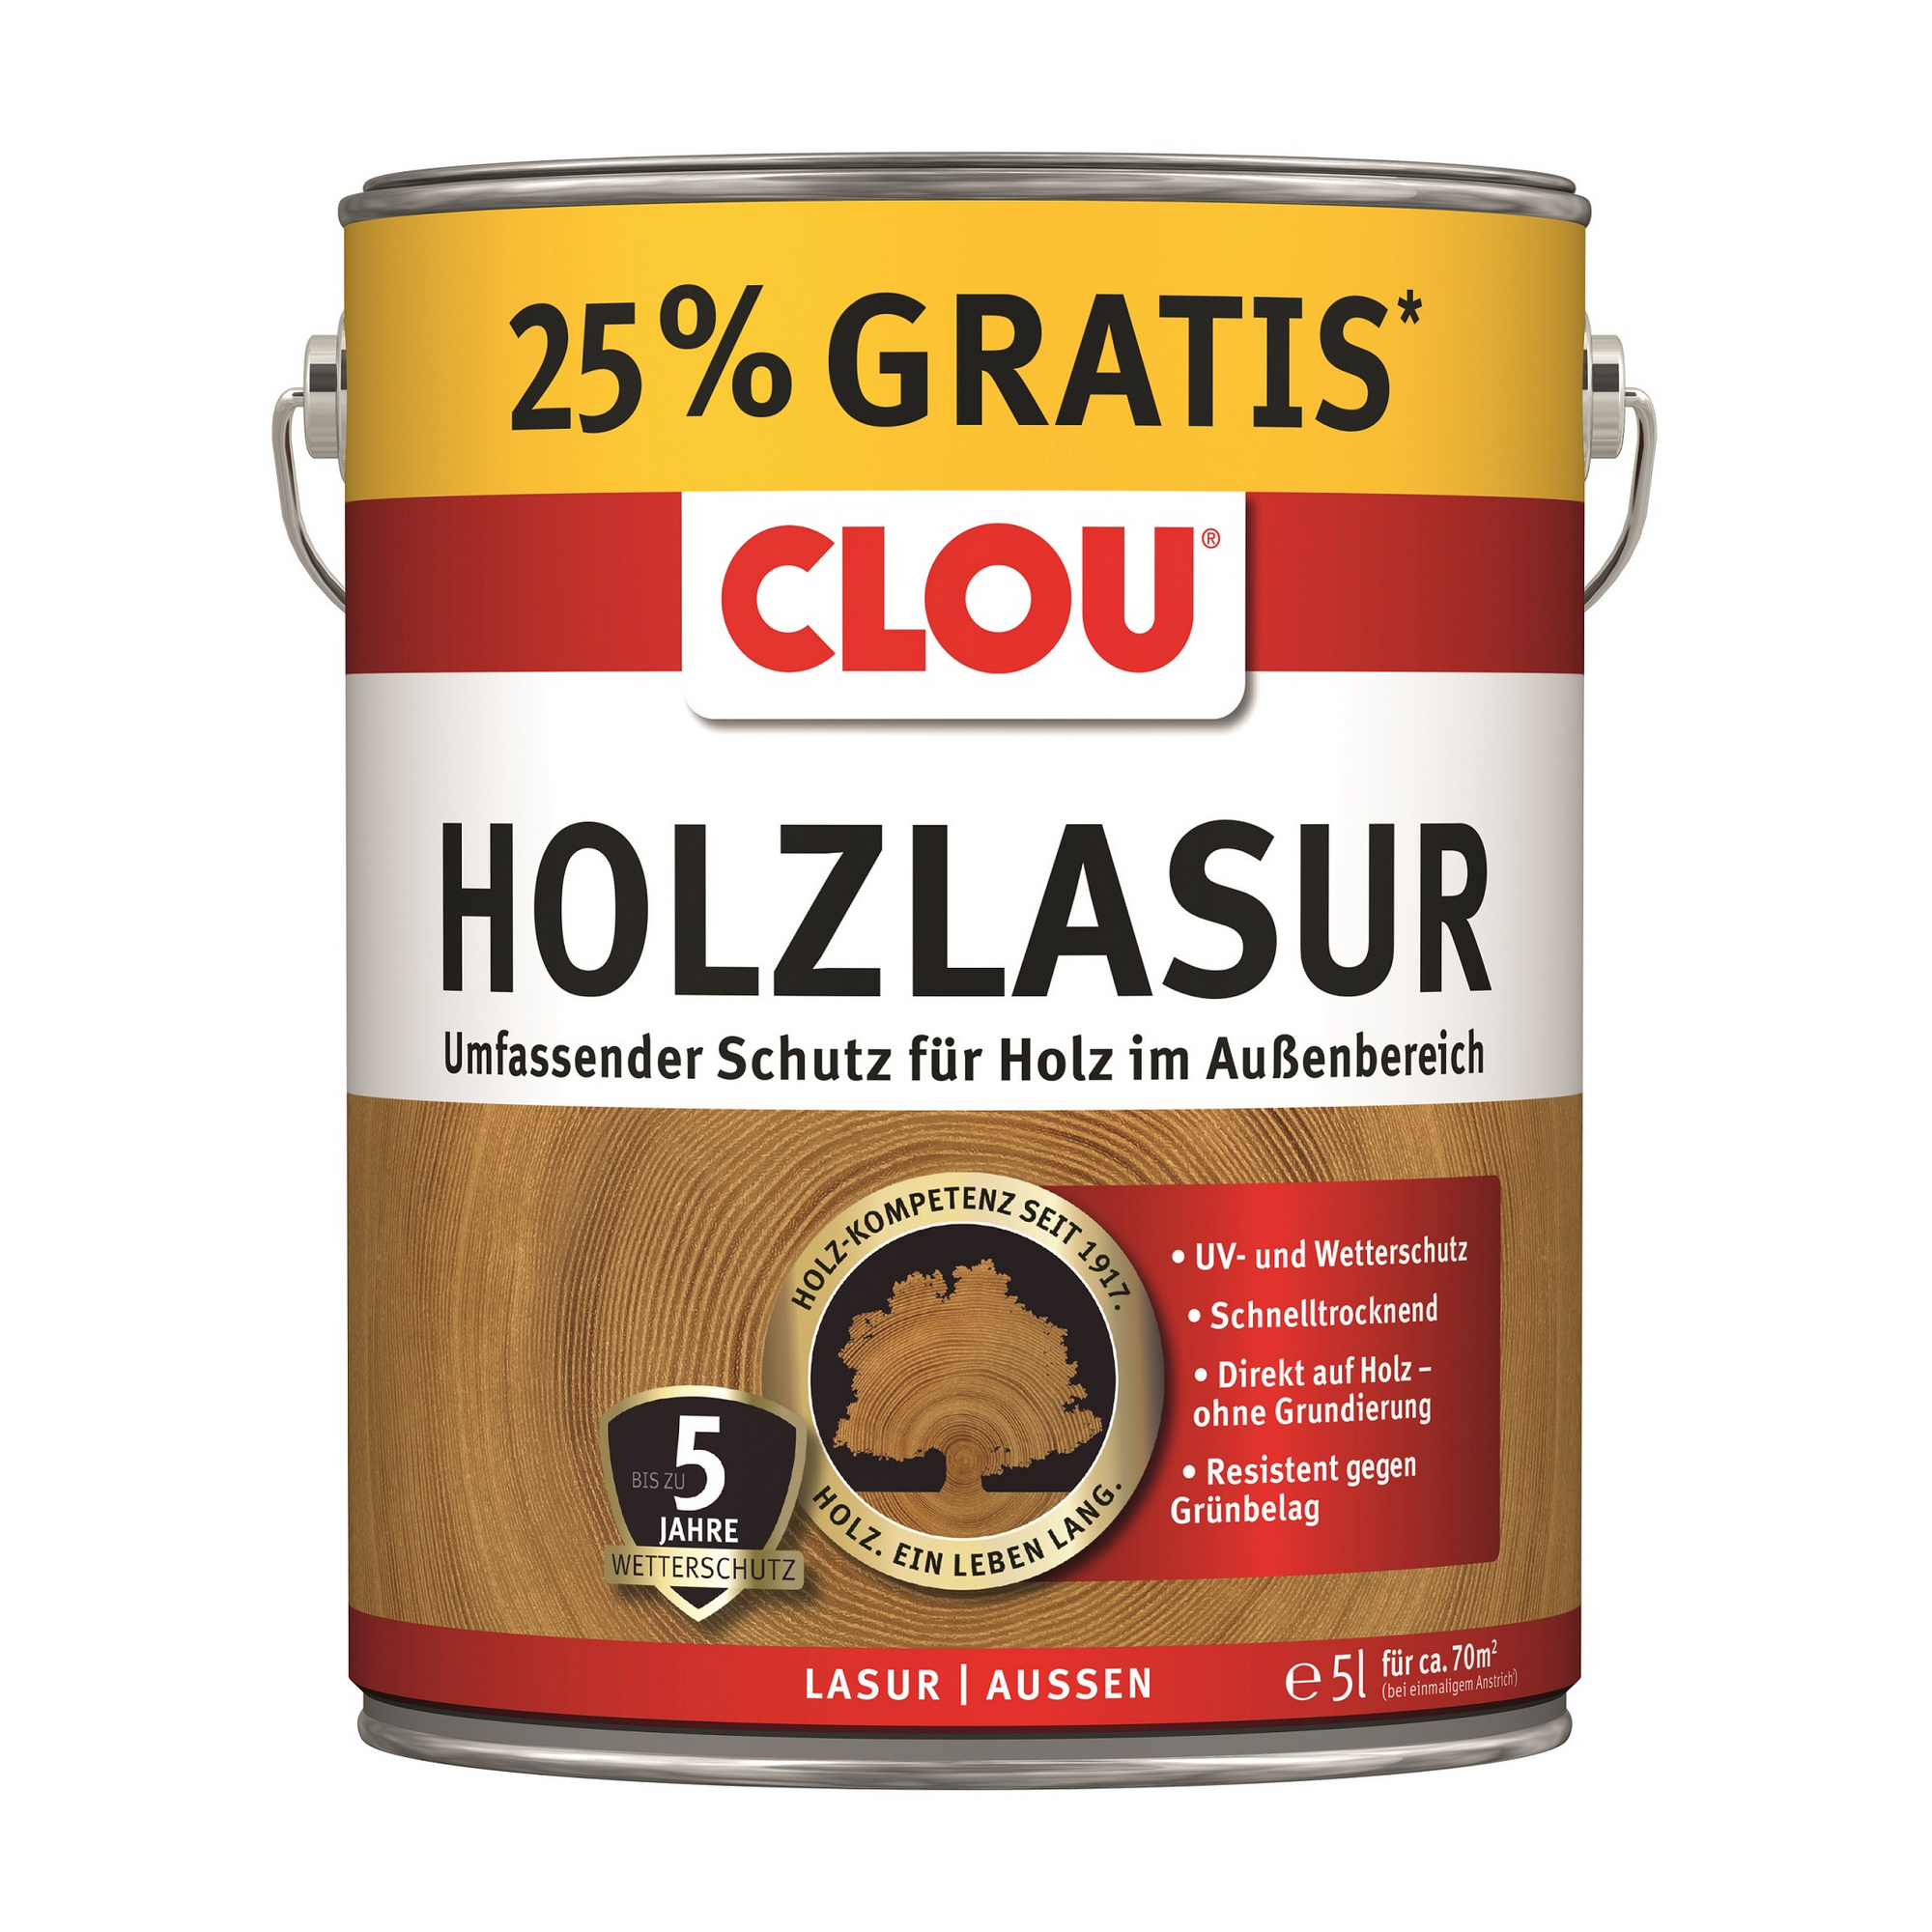 Holzlasur nussbaumfarben 5 l + product picture